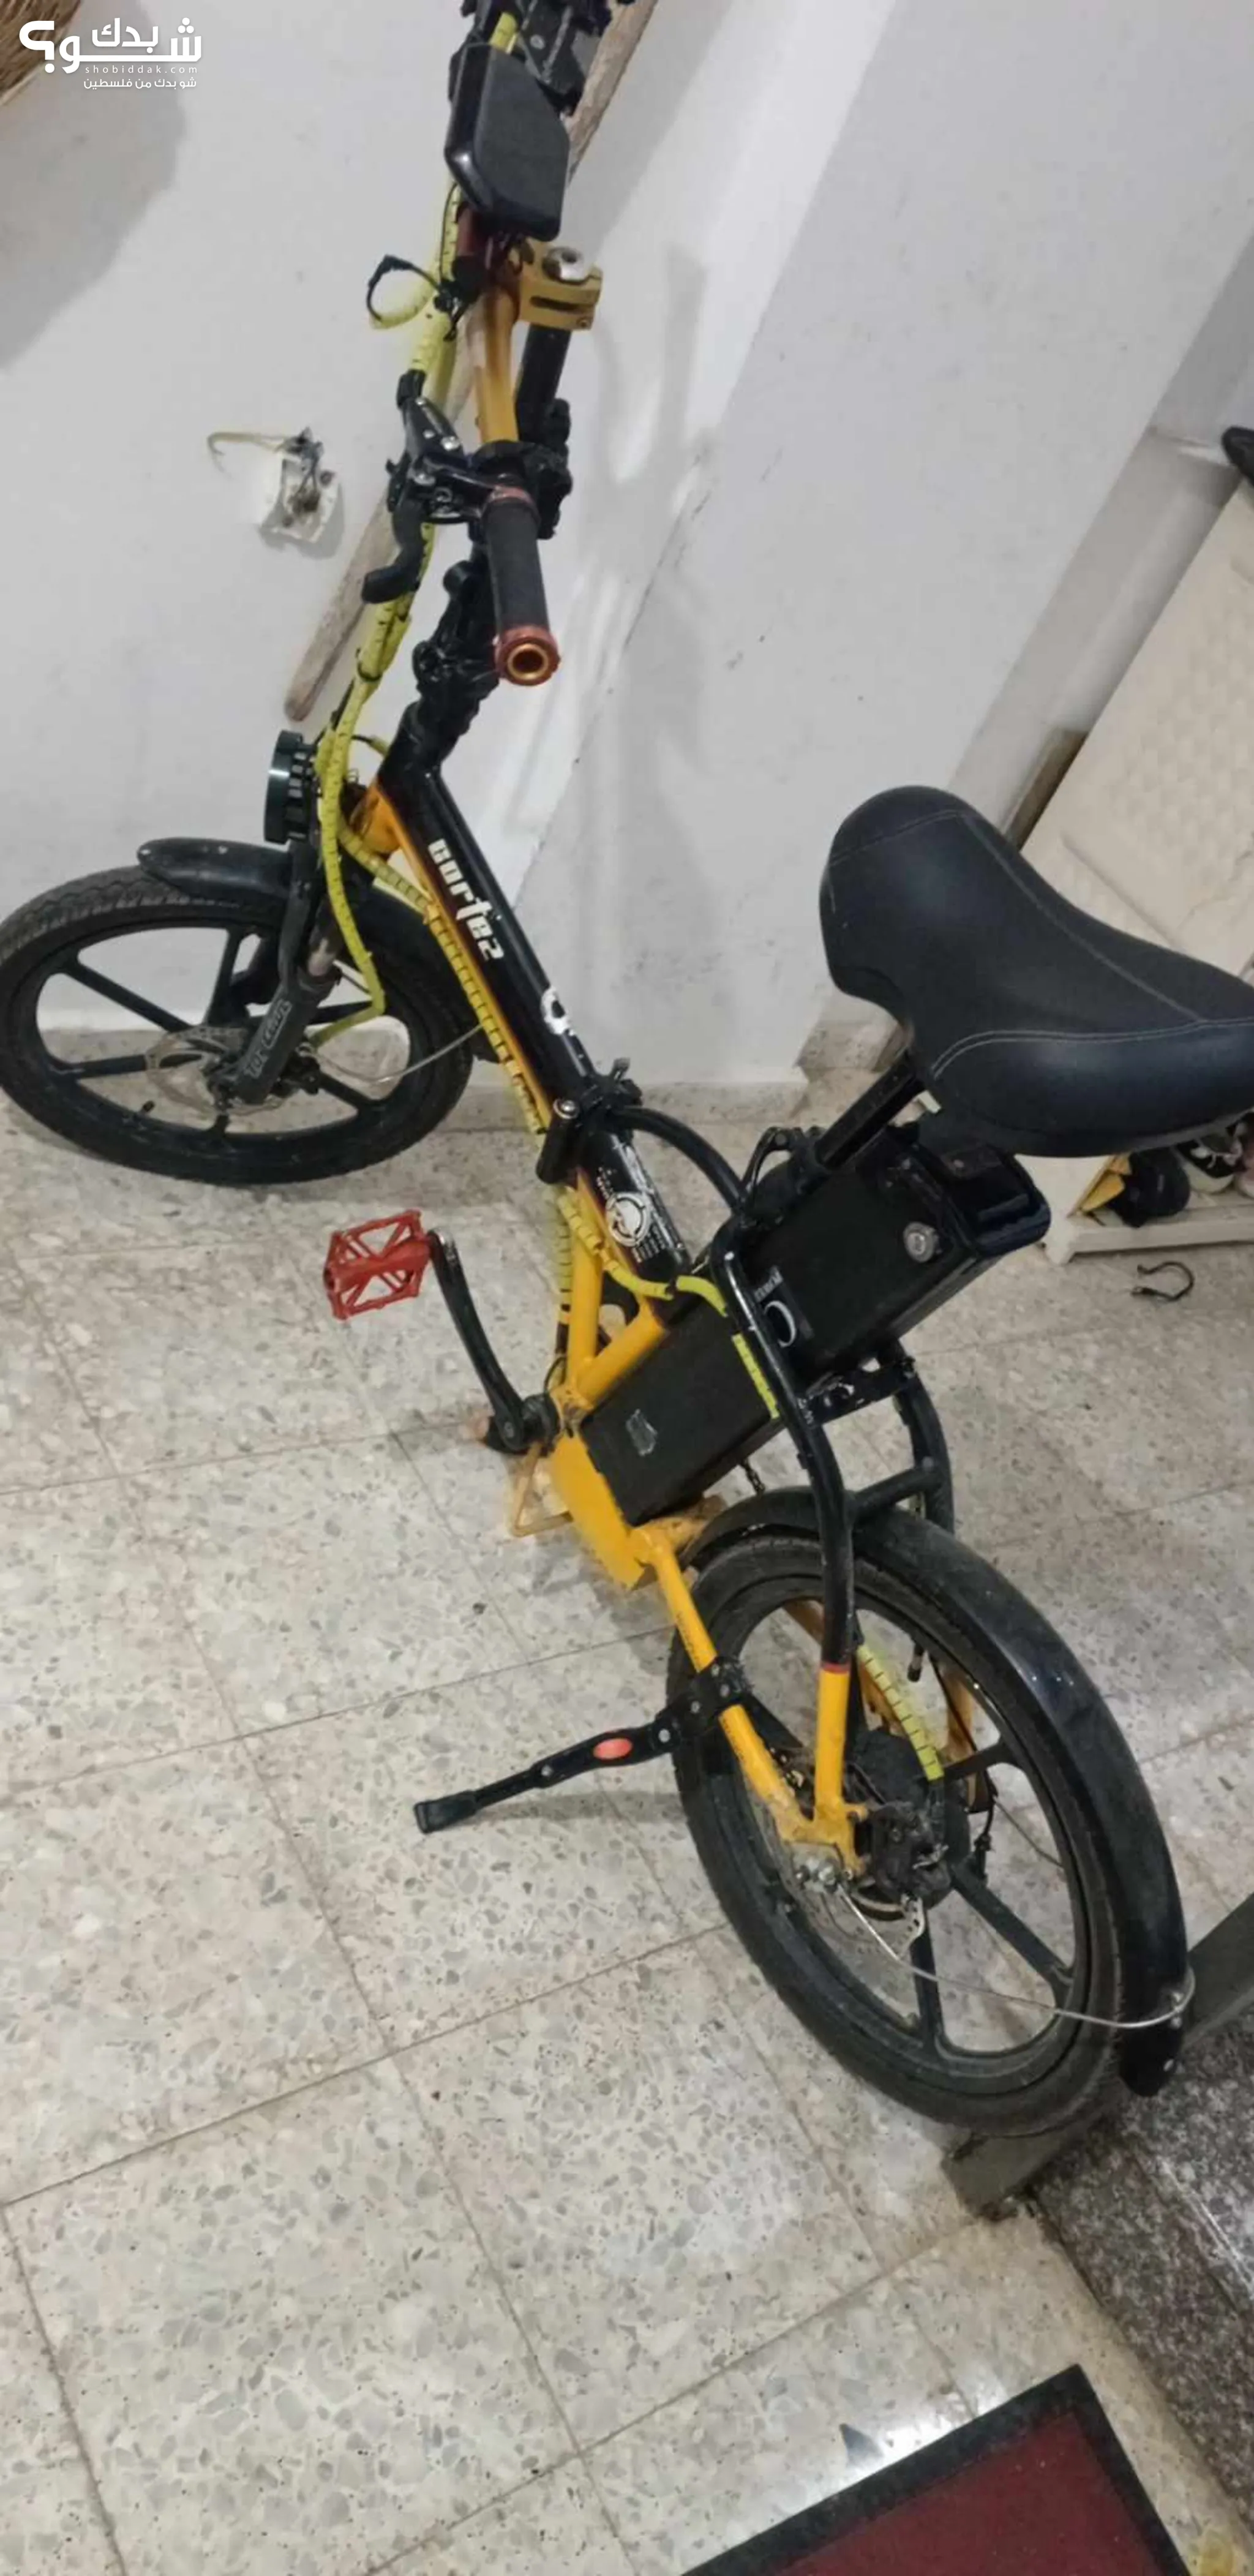 دراجات كهربائية للبيع في فلسطين : افضل سعر | شو بدك